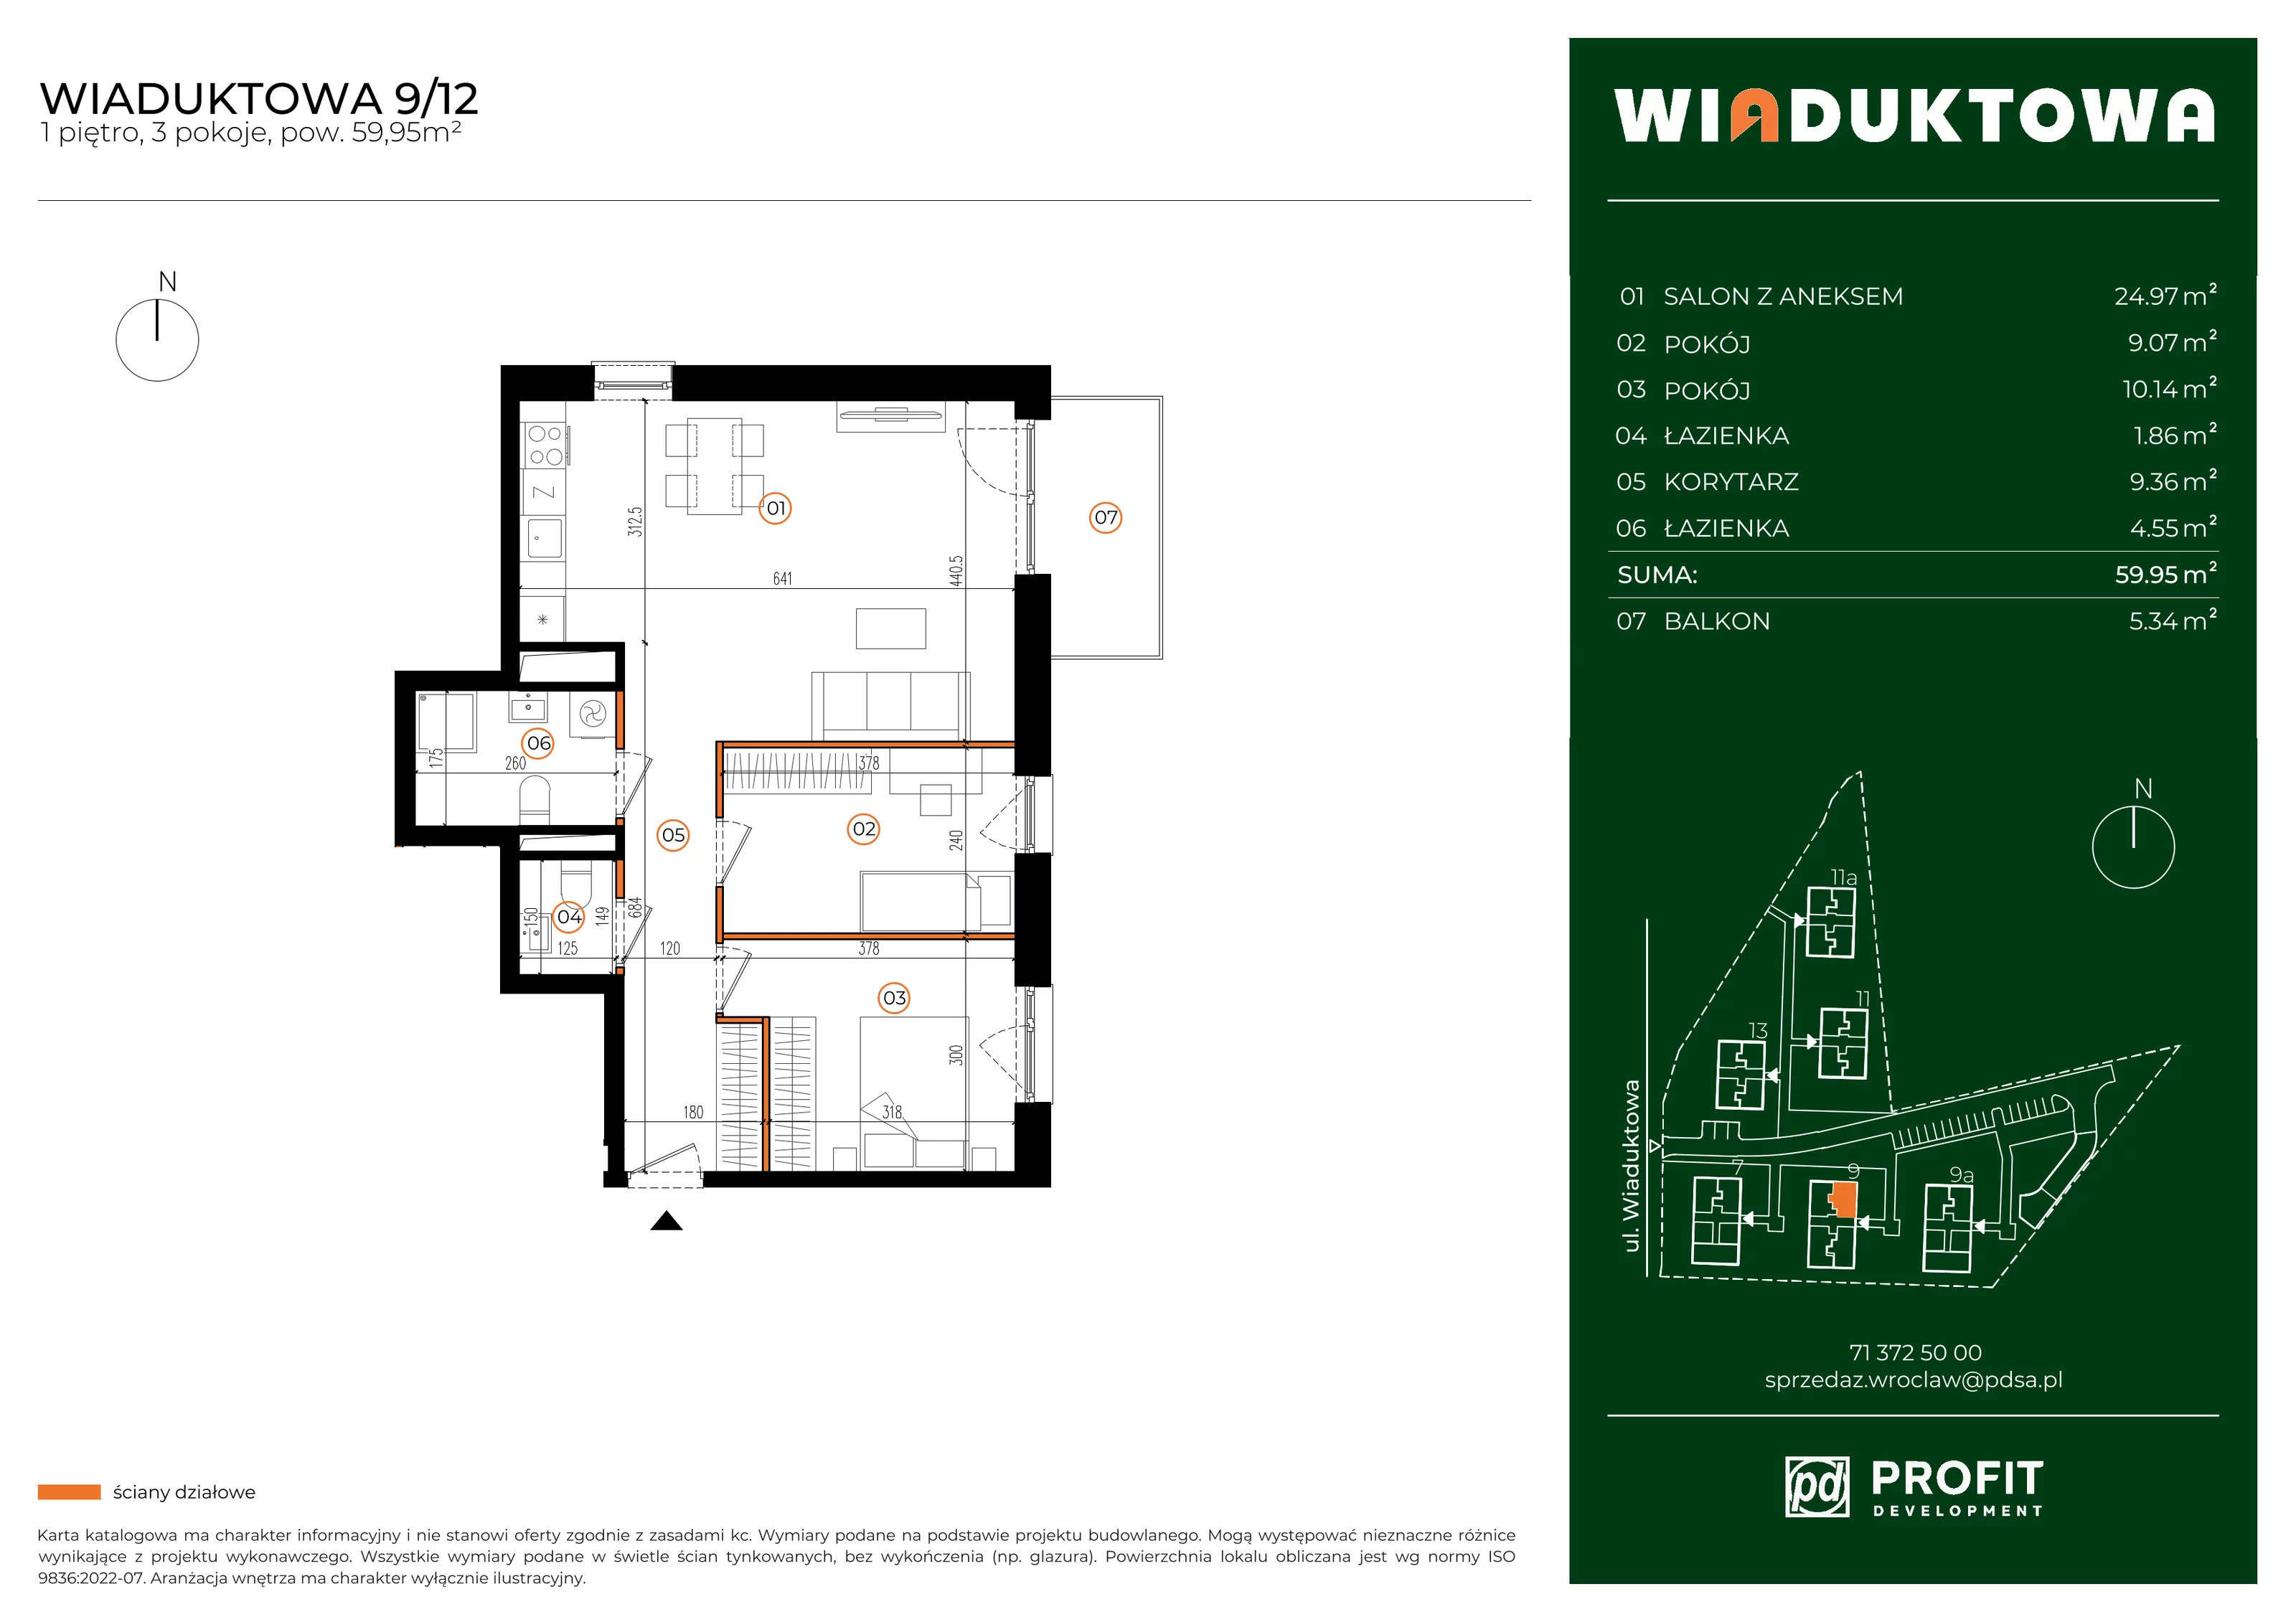 Mieszkanie 59,95 m², piętro 1, oferta nr WI/9/12, Wiaduktowa, Wrocław, Krzyki-Partynice, Krzyki, ul. Wiaduktowa